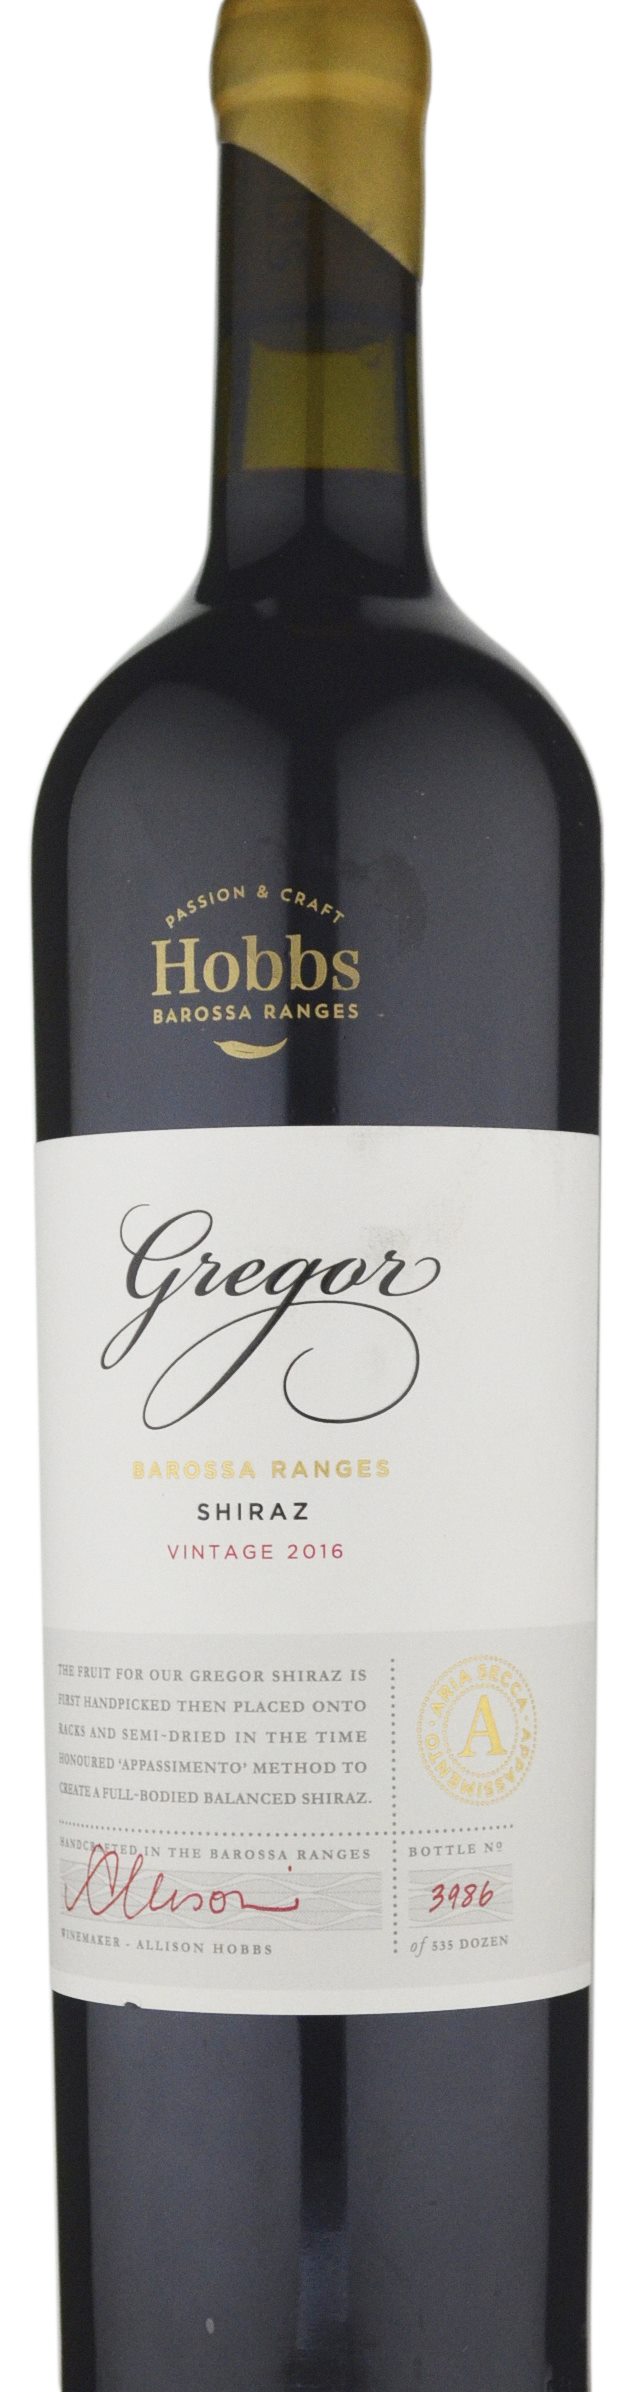 Hobbs Gregor Shiraz 2016